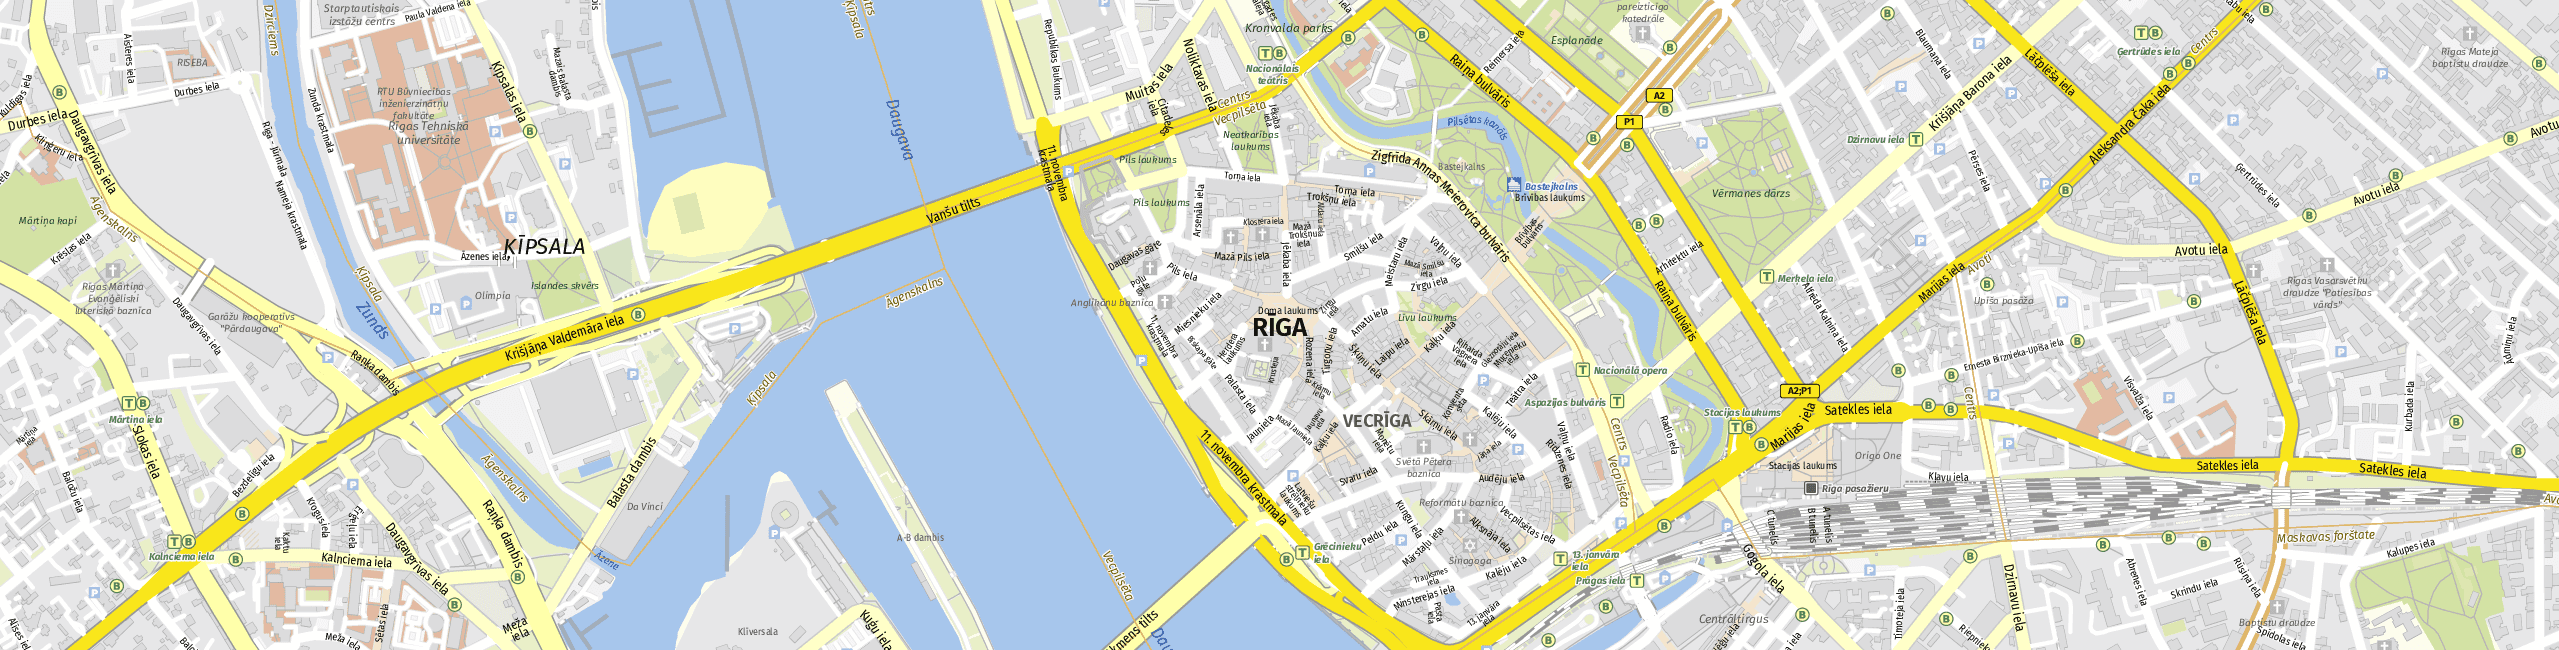 Stadtplan Riga zum Downloaden.